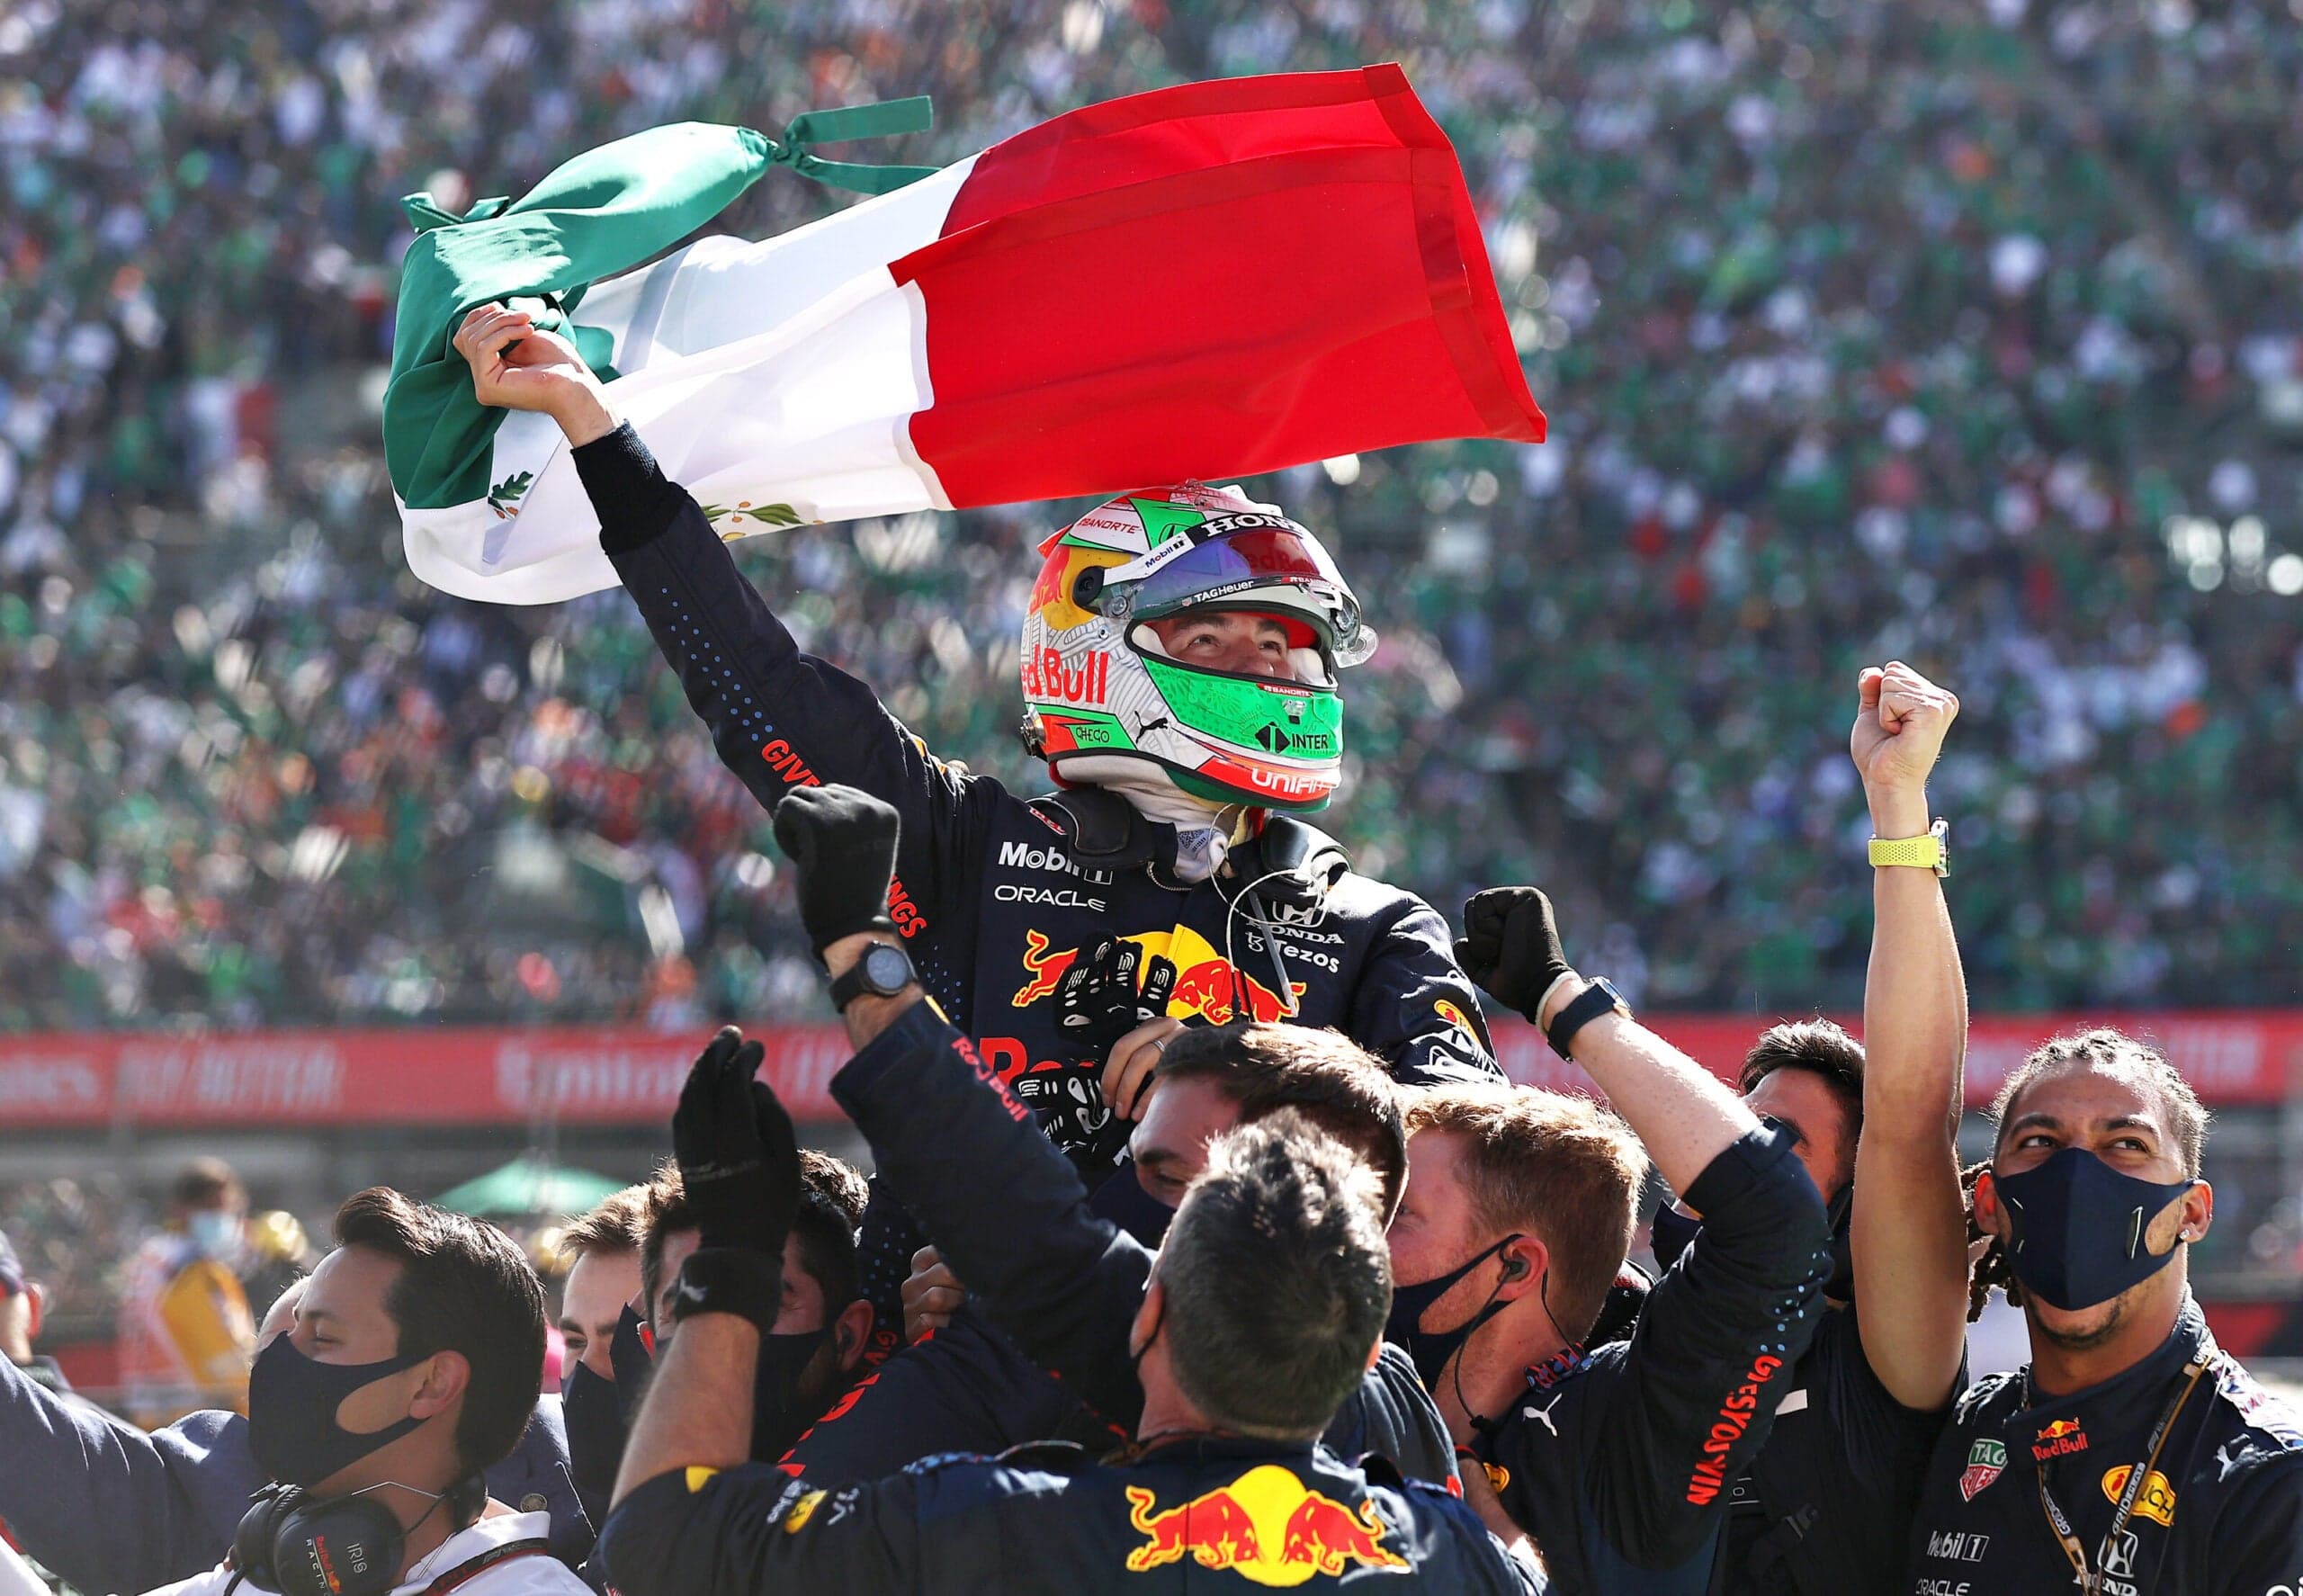 Sergio Perez celebrating a podium result at last year's Mexico Grand Prix